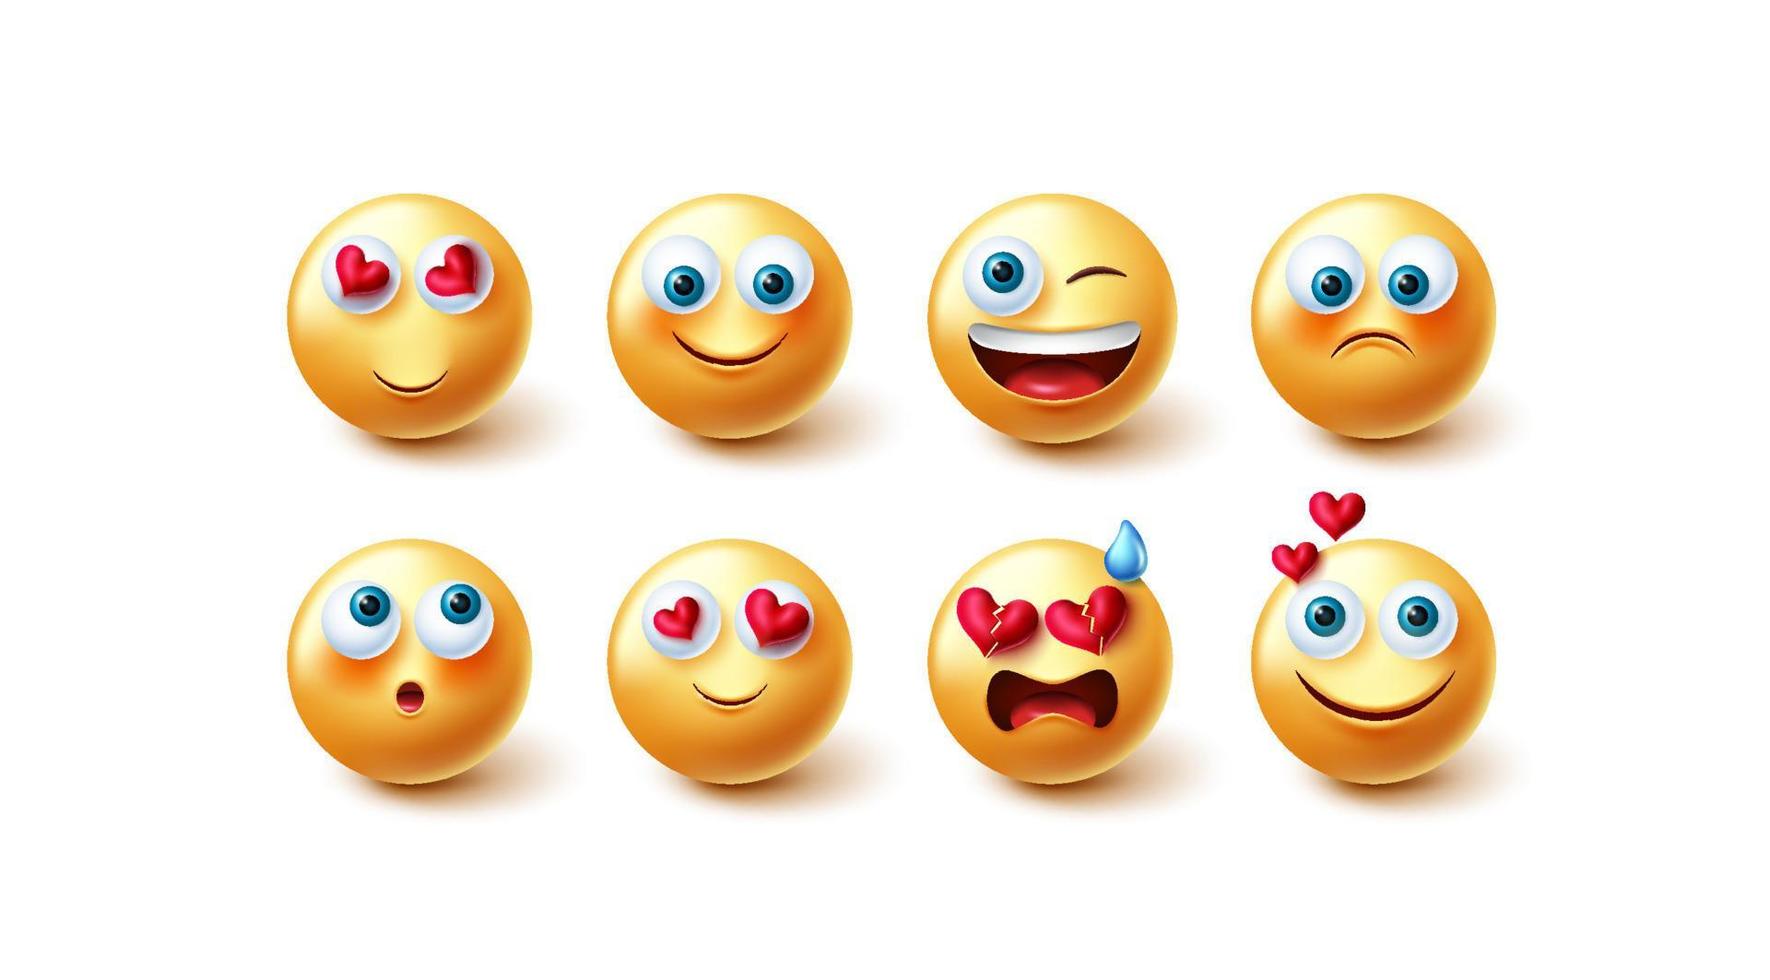 conjunto de vetores de caracteres emojis. emoji 3d em reações faciais felizes e inlove e expressão isolada no fundo branco para design de elementos gráficos de emoticon amarelo. ilustração vetorial.